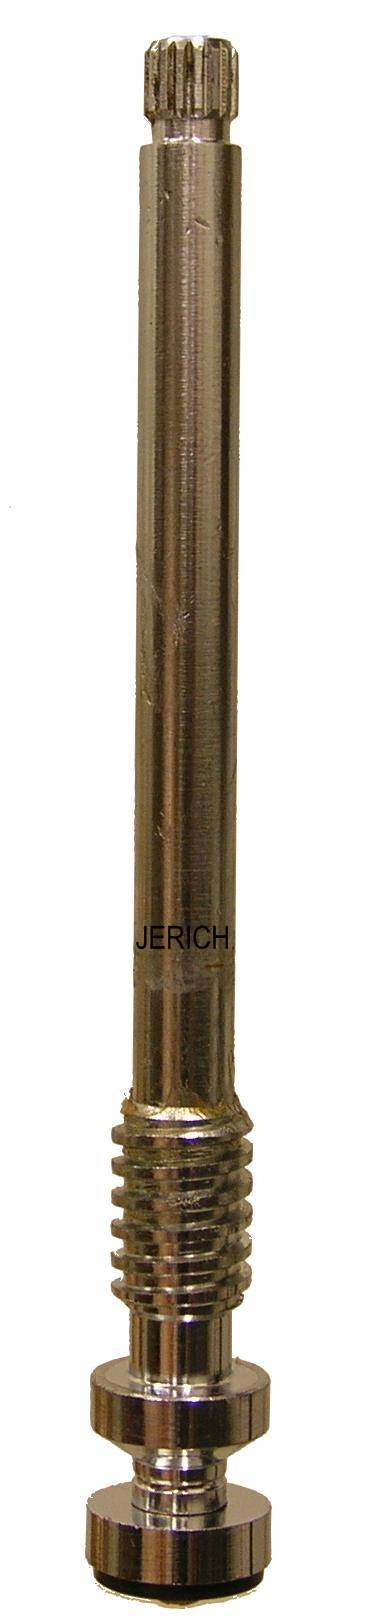 Jerich 81611-1 Royal Brass stem only